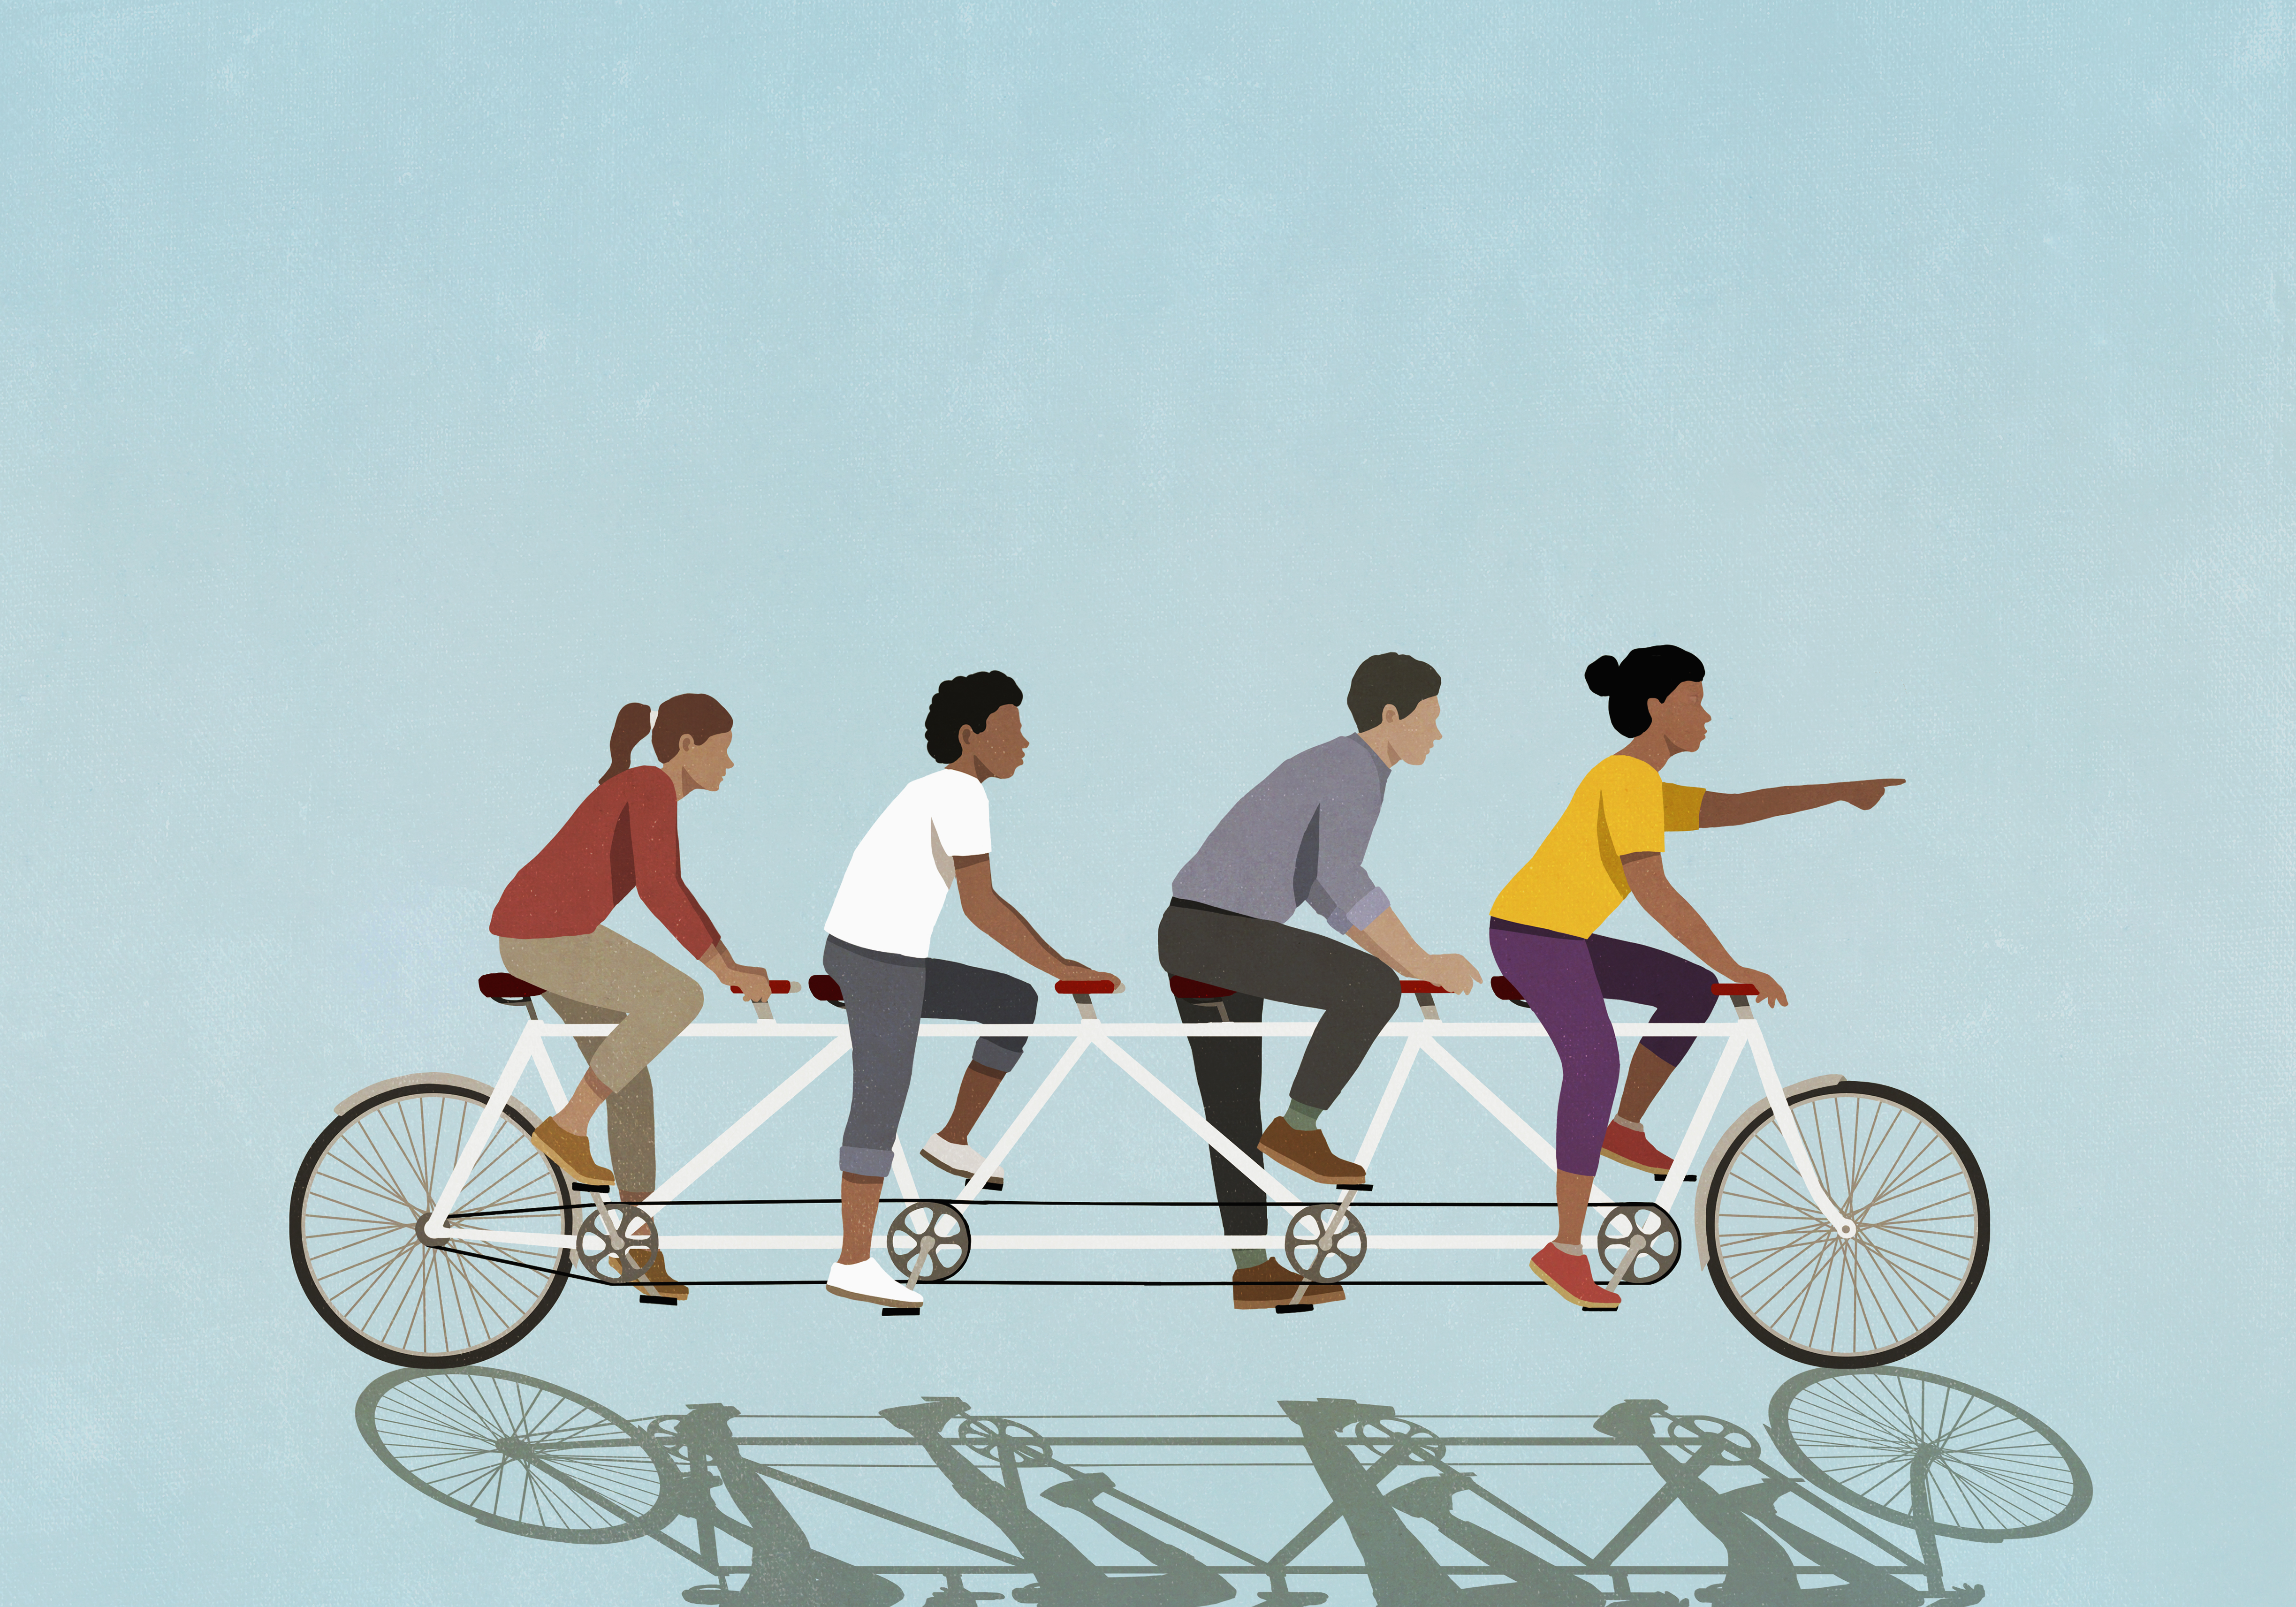 رسم توضيحي للأصدقاء الذين يركبون دراجة هوائية على خلفية زرقاء.